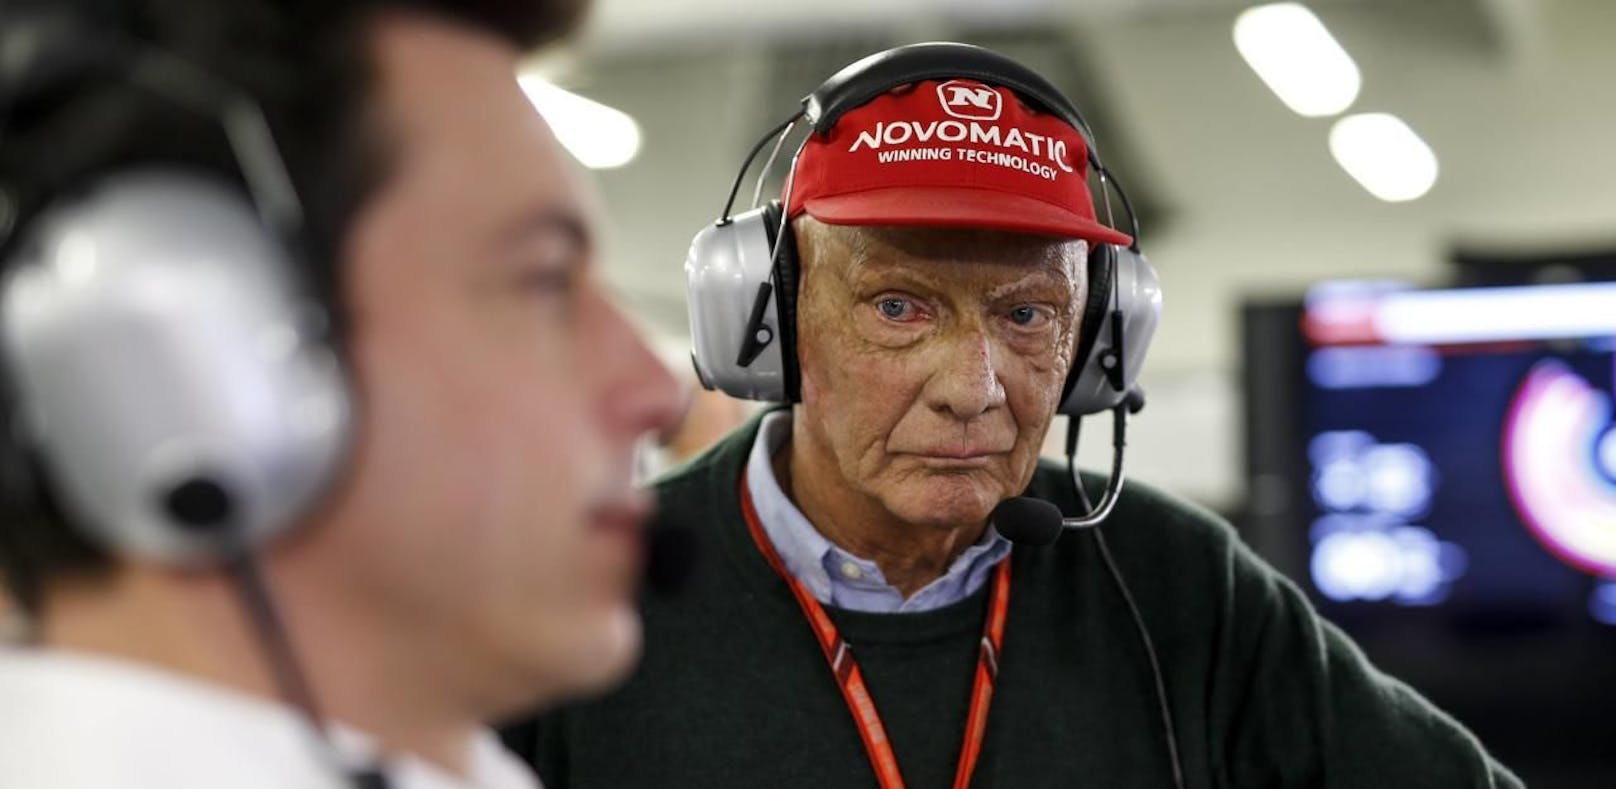 Lauda tobt: "Formel 1 darf nicht manipuliert werden"